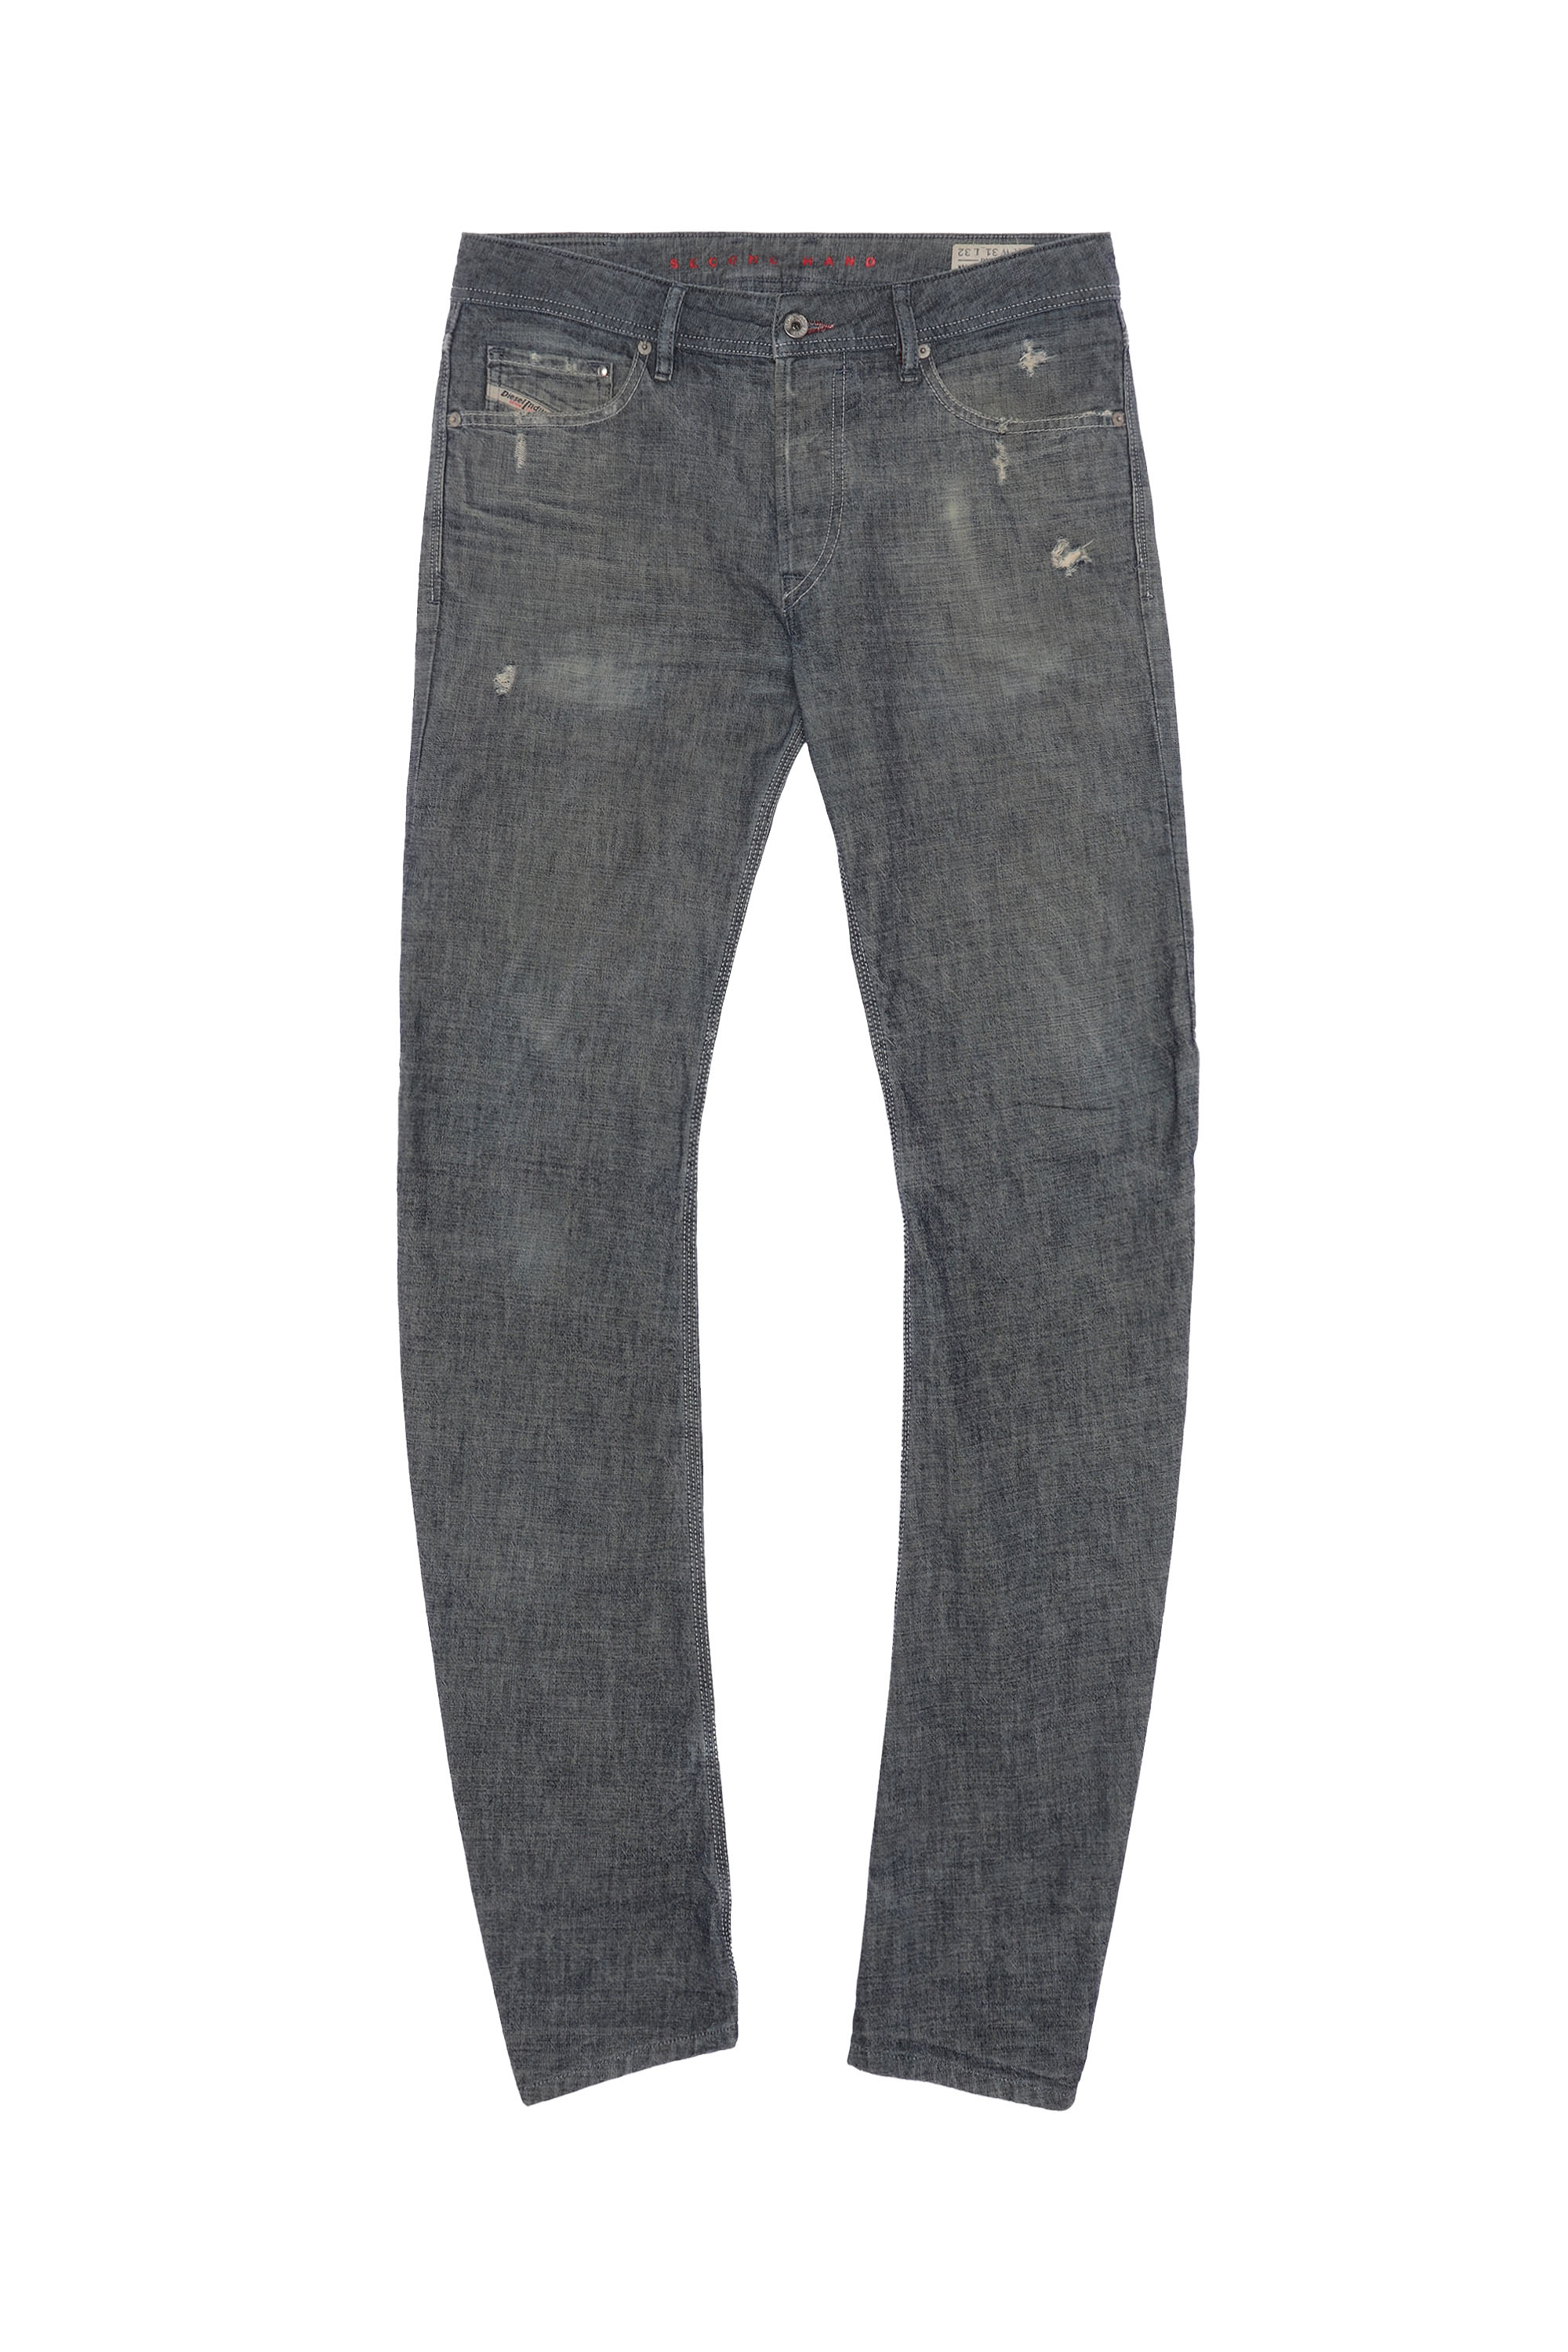 ROMBEE-XT, Grey - Jeans